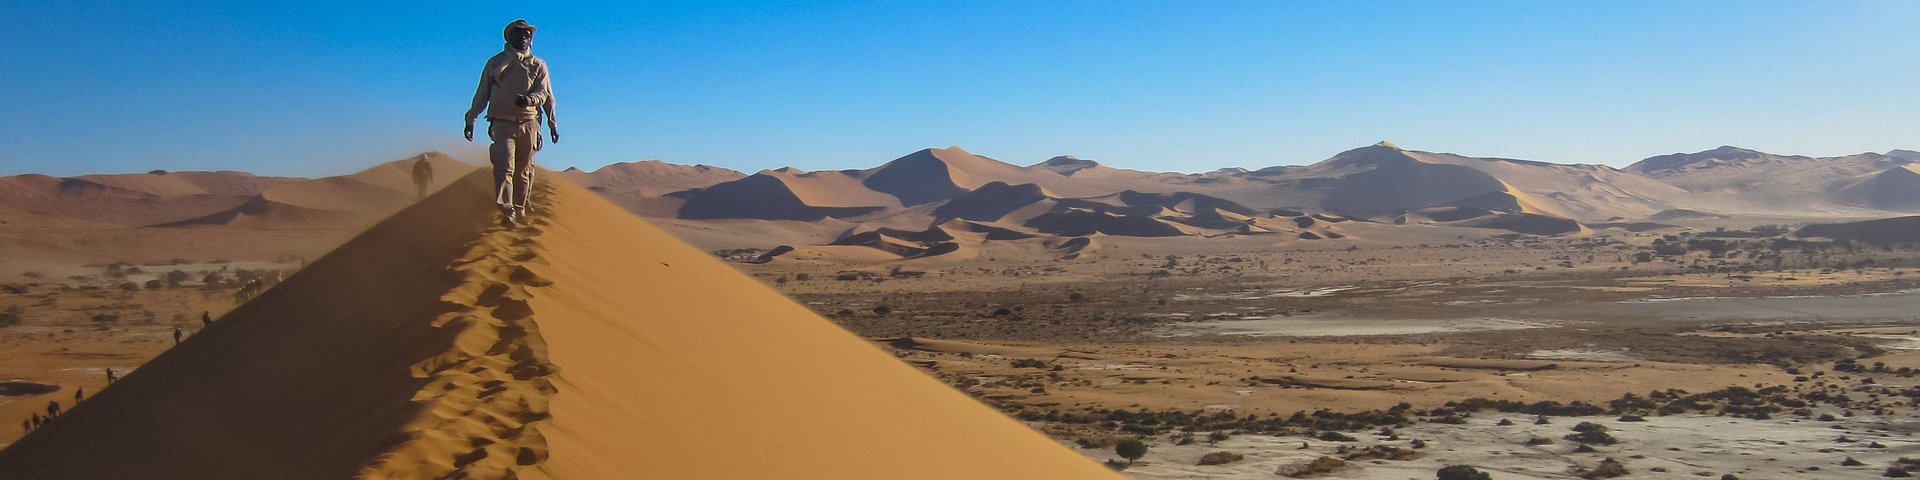 Wanderer auf einer riesigen Sanddüne des Sossusvlei in Namibia